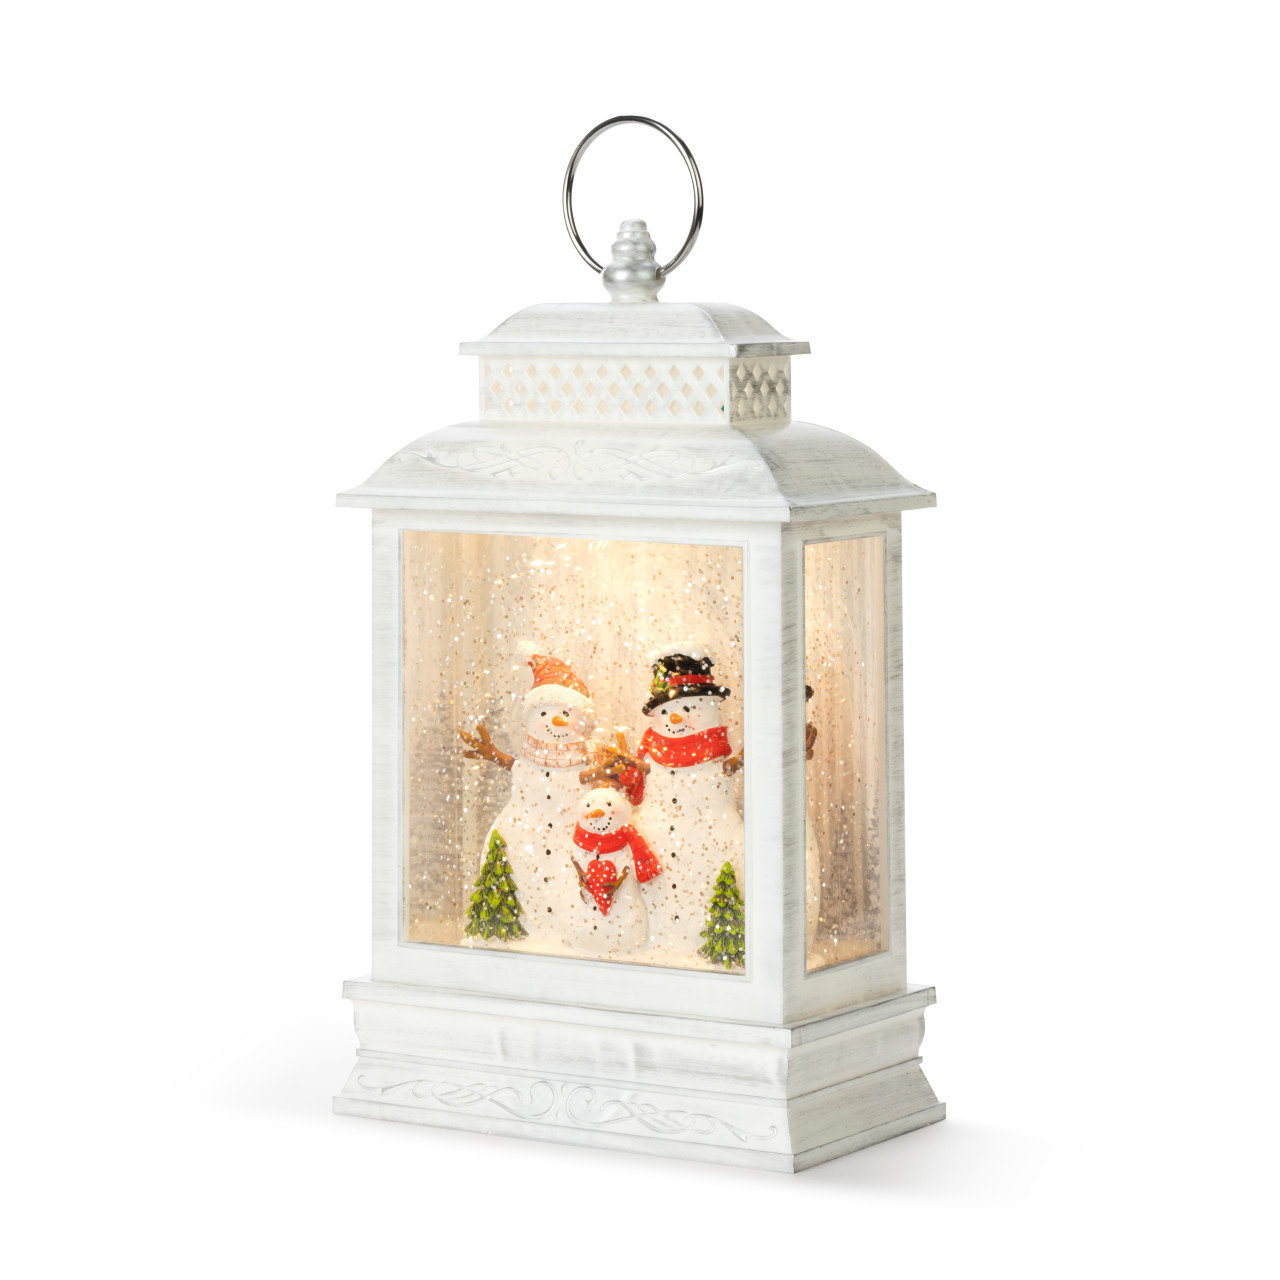 https://assets.wfcdn.com/im/28993884/compr-r85/2131/213100702/lit-musical-snowman-family-lantern.jpg